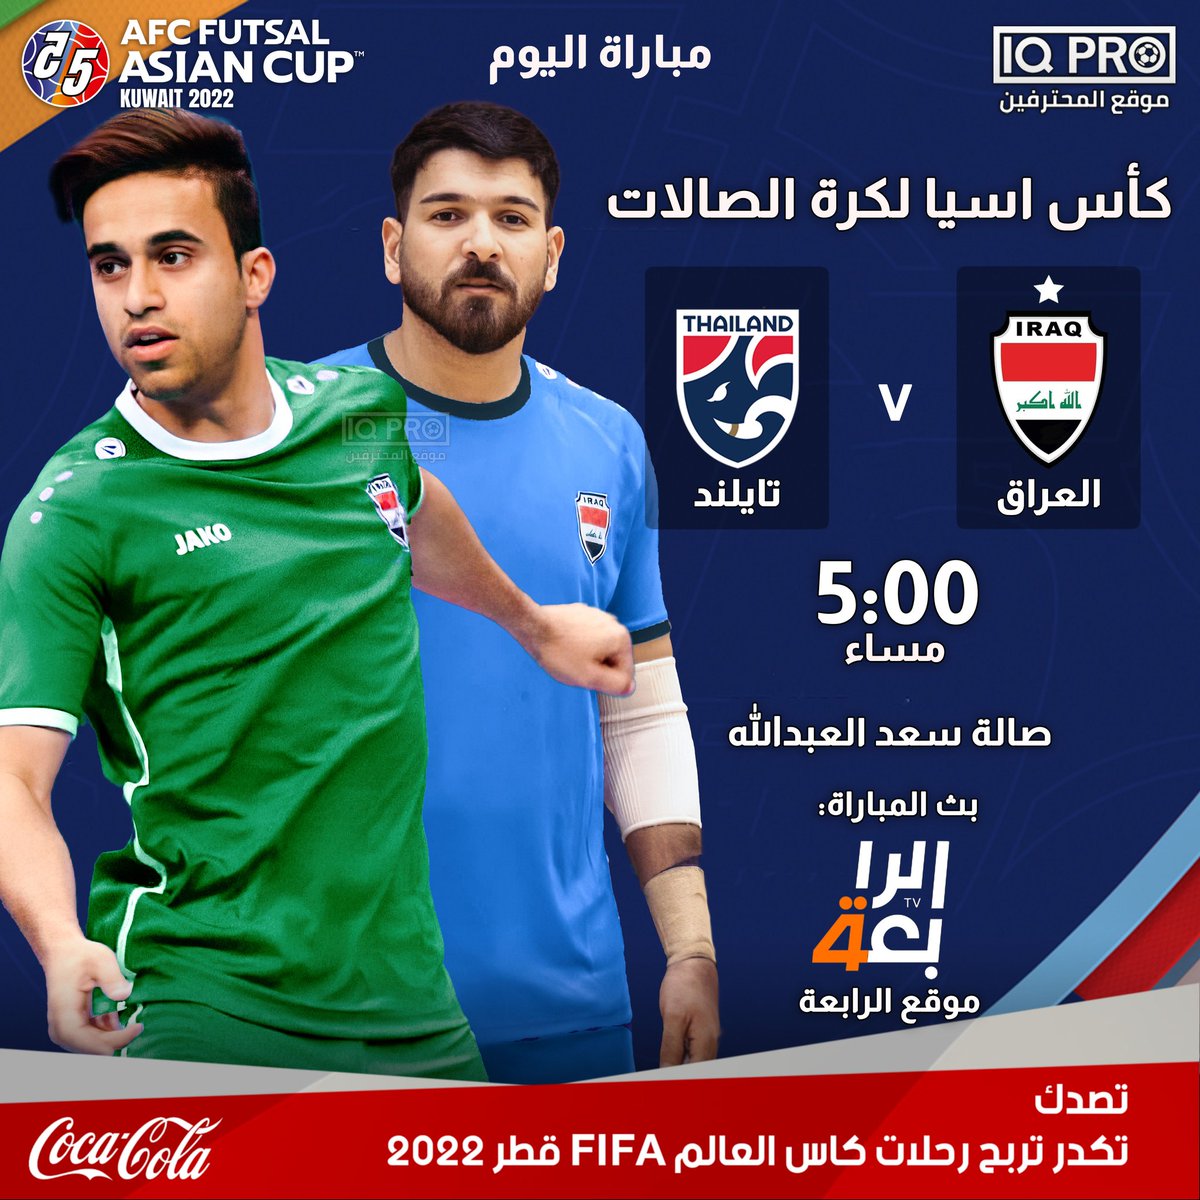 اليوم | كأس اسيا لكرة الصالات
العراق - تايلند
5:00 مساء
بث المباراة: موقع قناة الرابعة